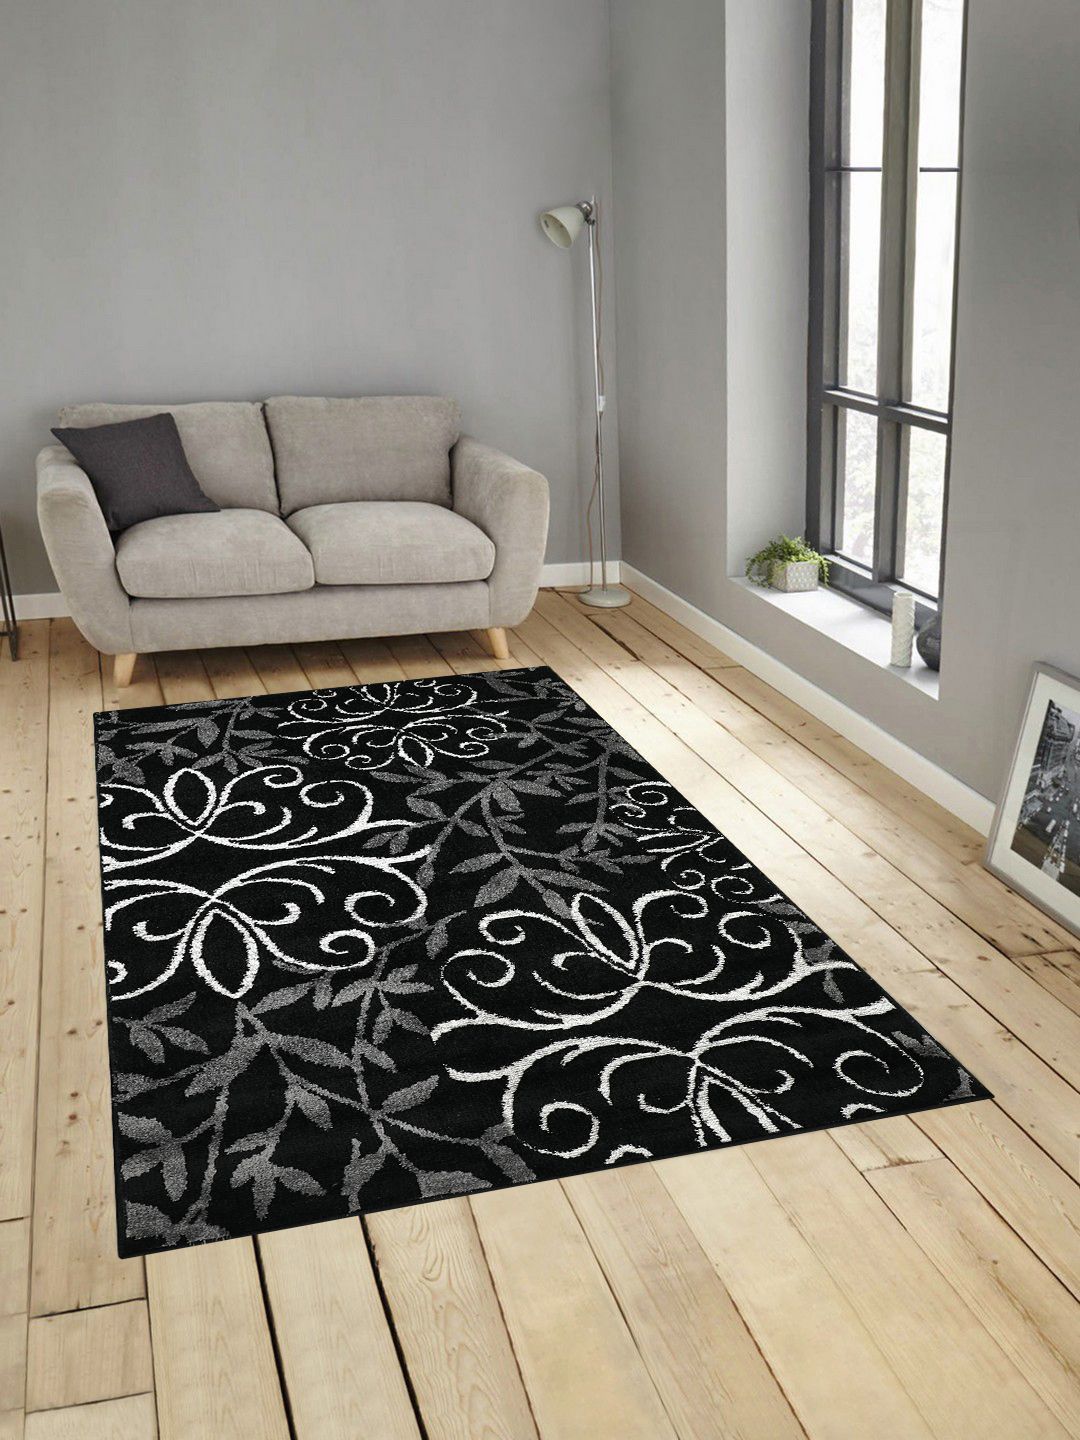 PRESTO Black & White Printed Anti-Skid Carpet Price in India